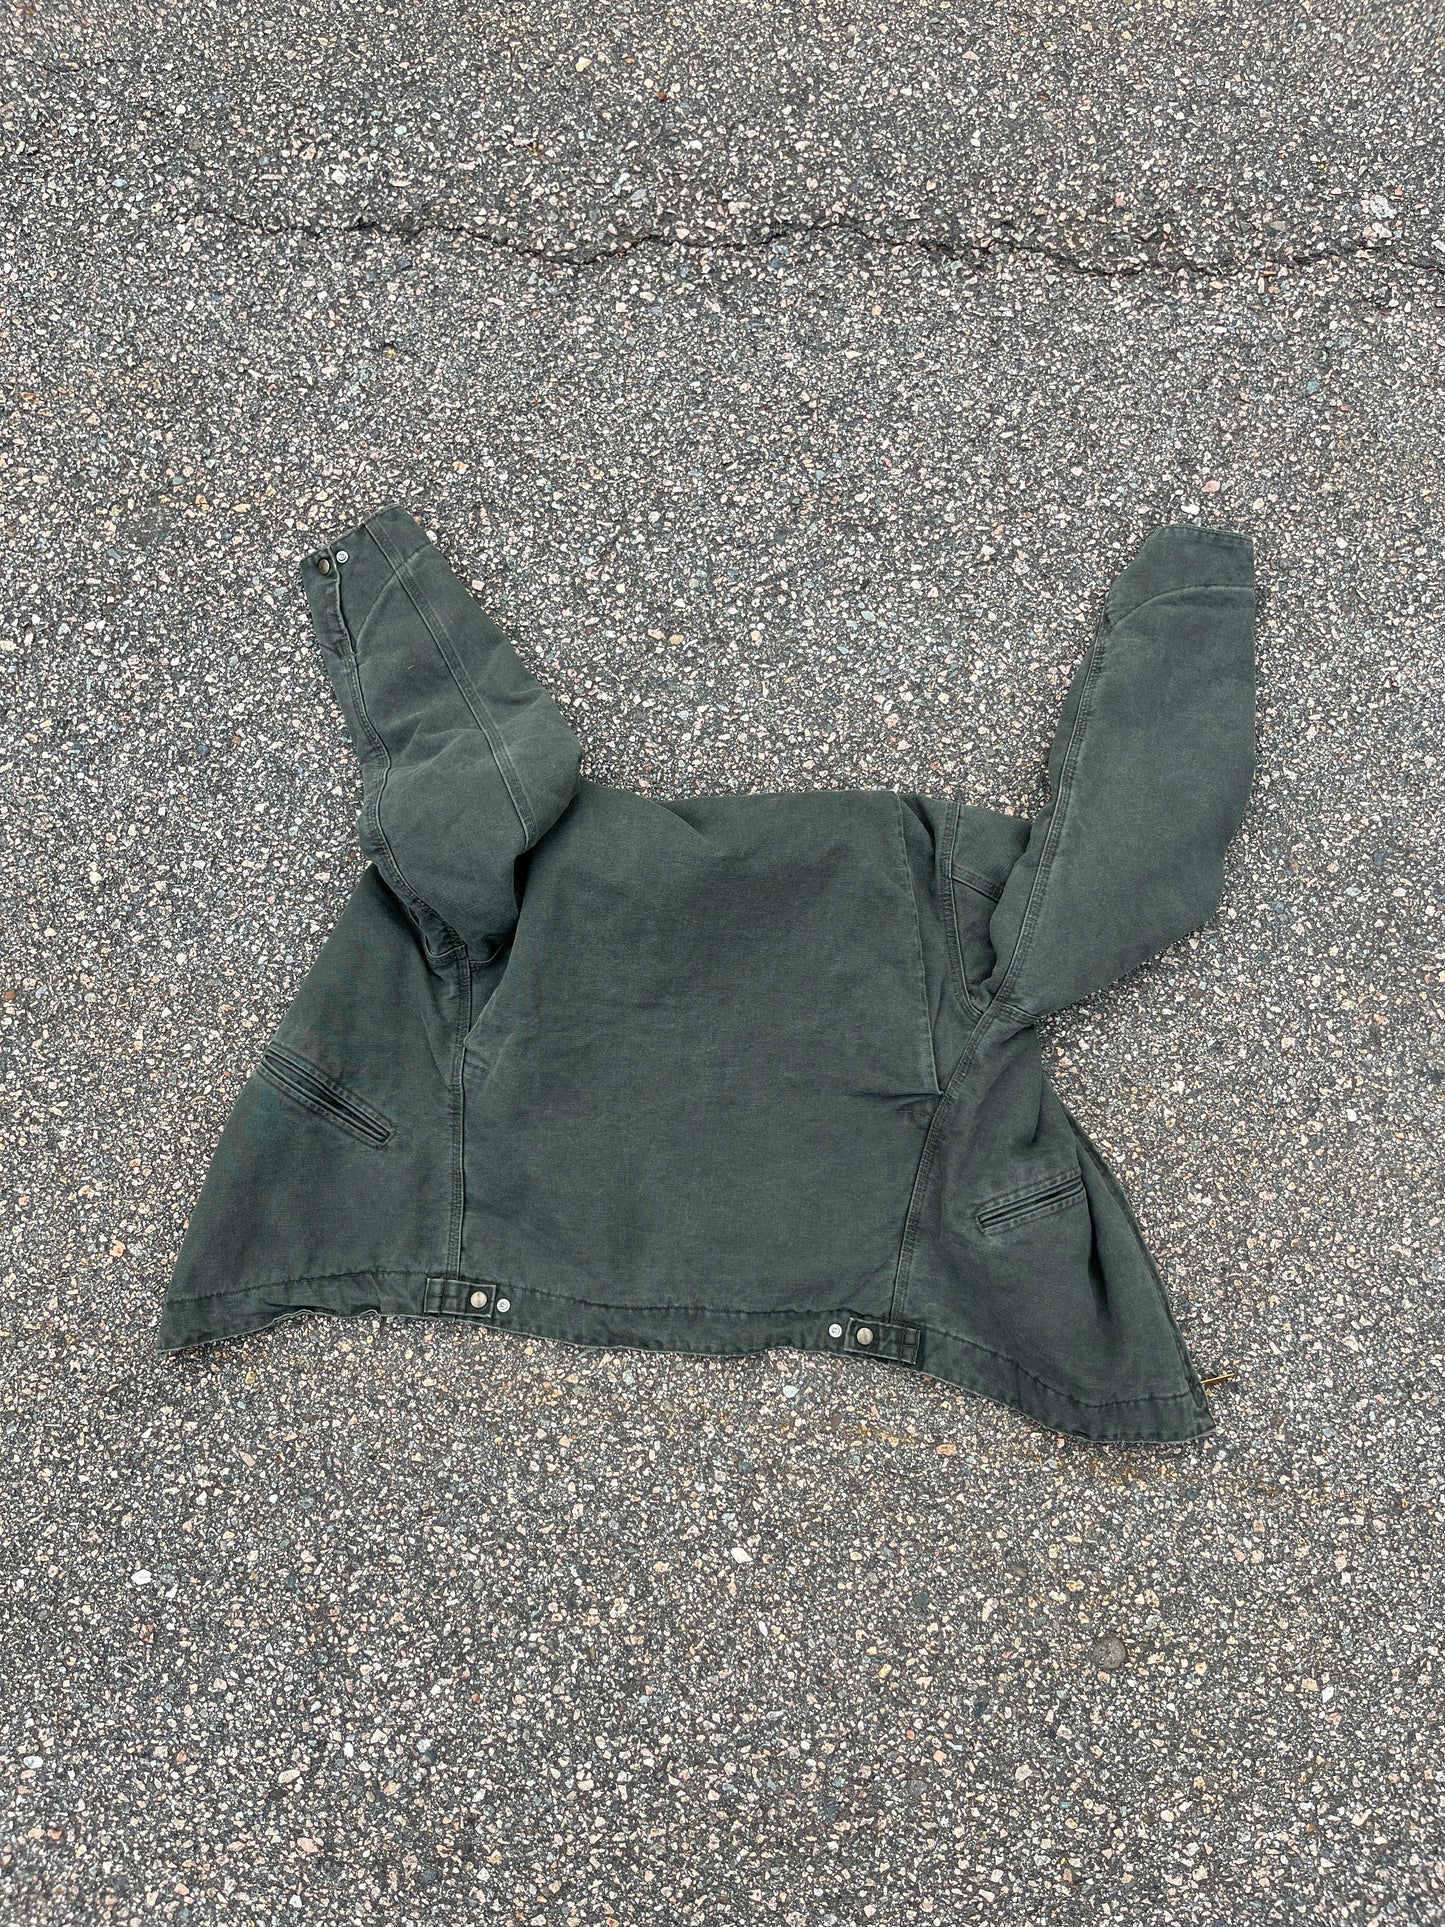 Faded Olive Green Carhartt Detroit Jacket - Medium